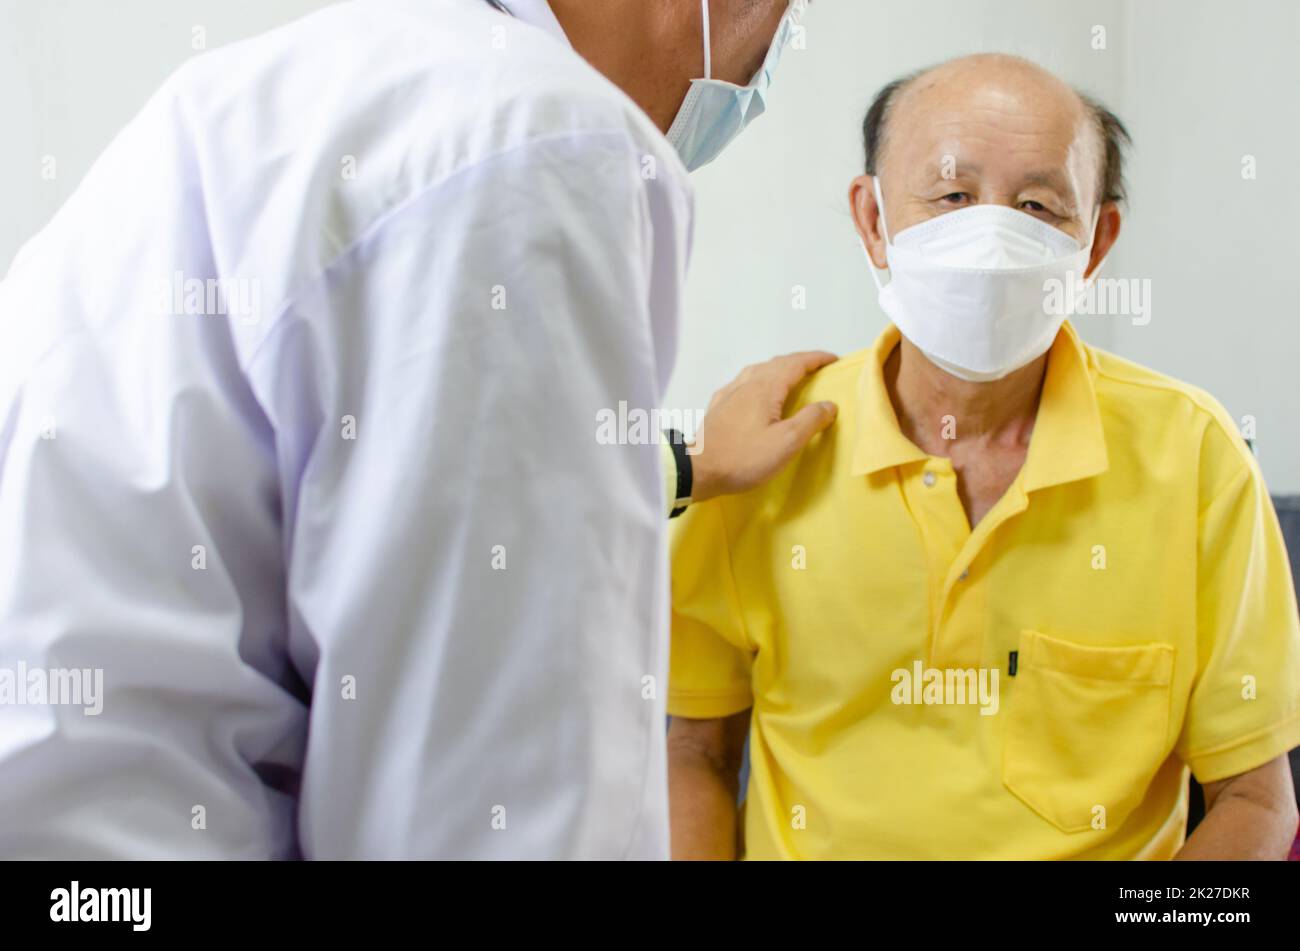 el doctor sujetó su hombro y habló con un hombre mayor que estaba enfermo para darle aliento. Foto de stock